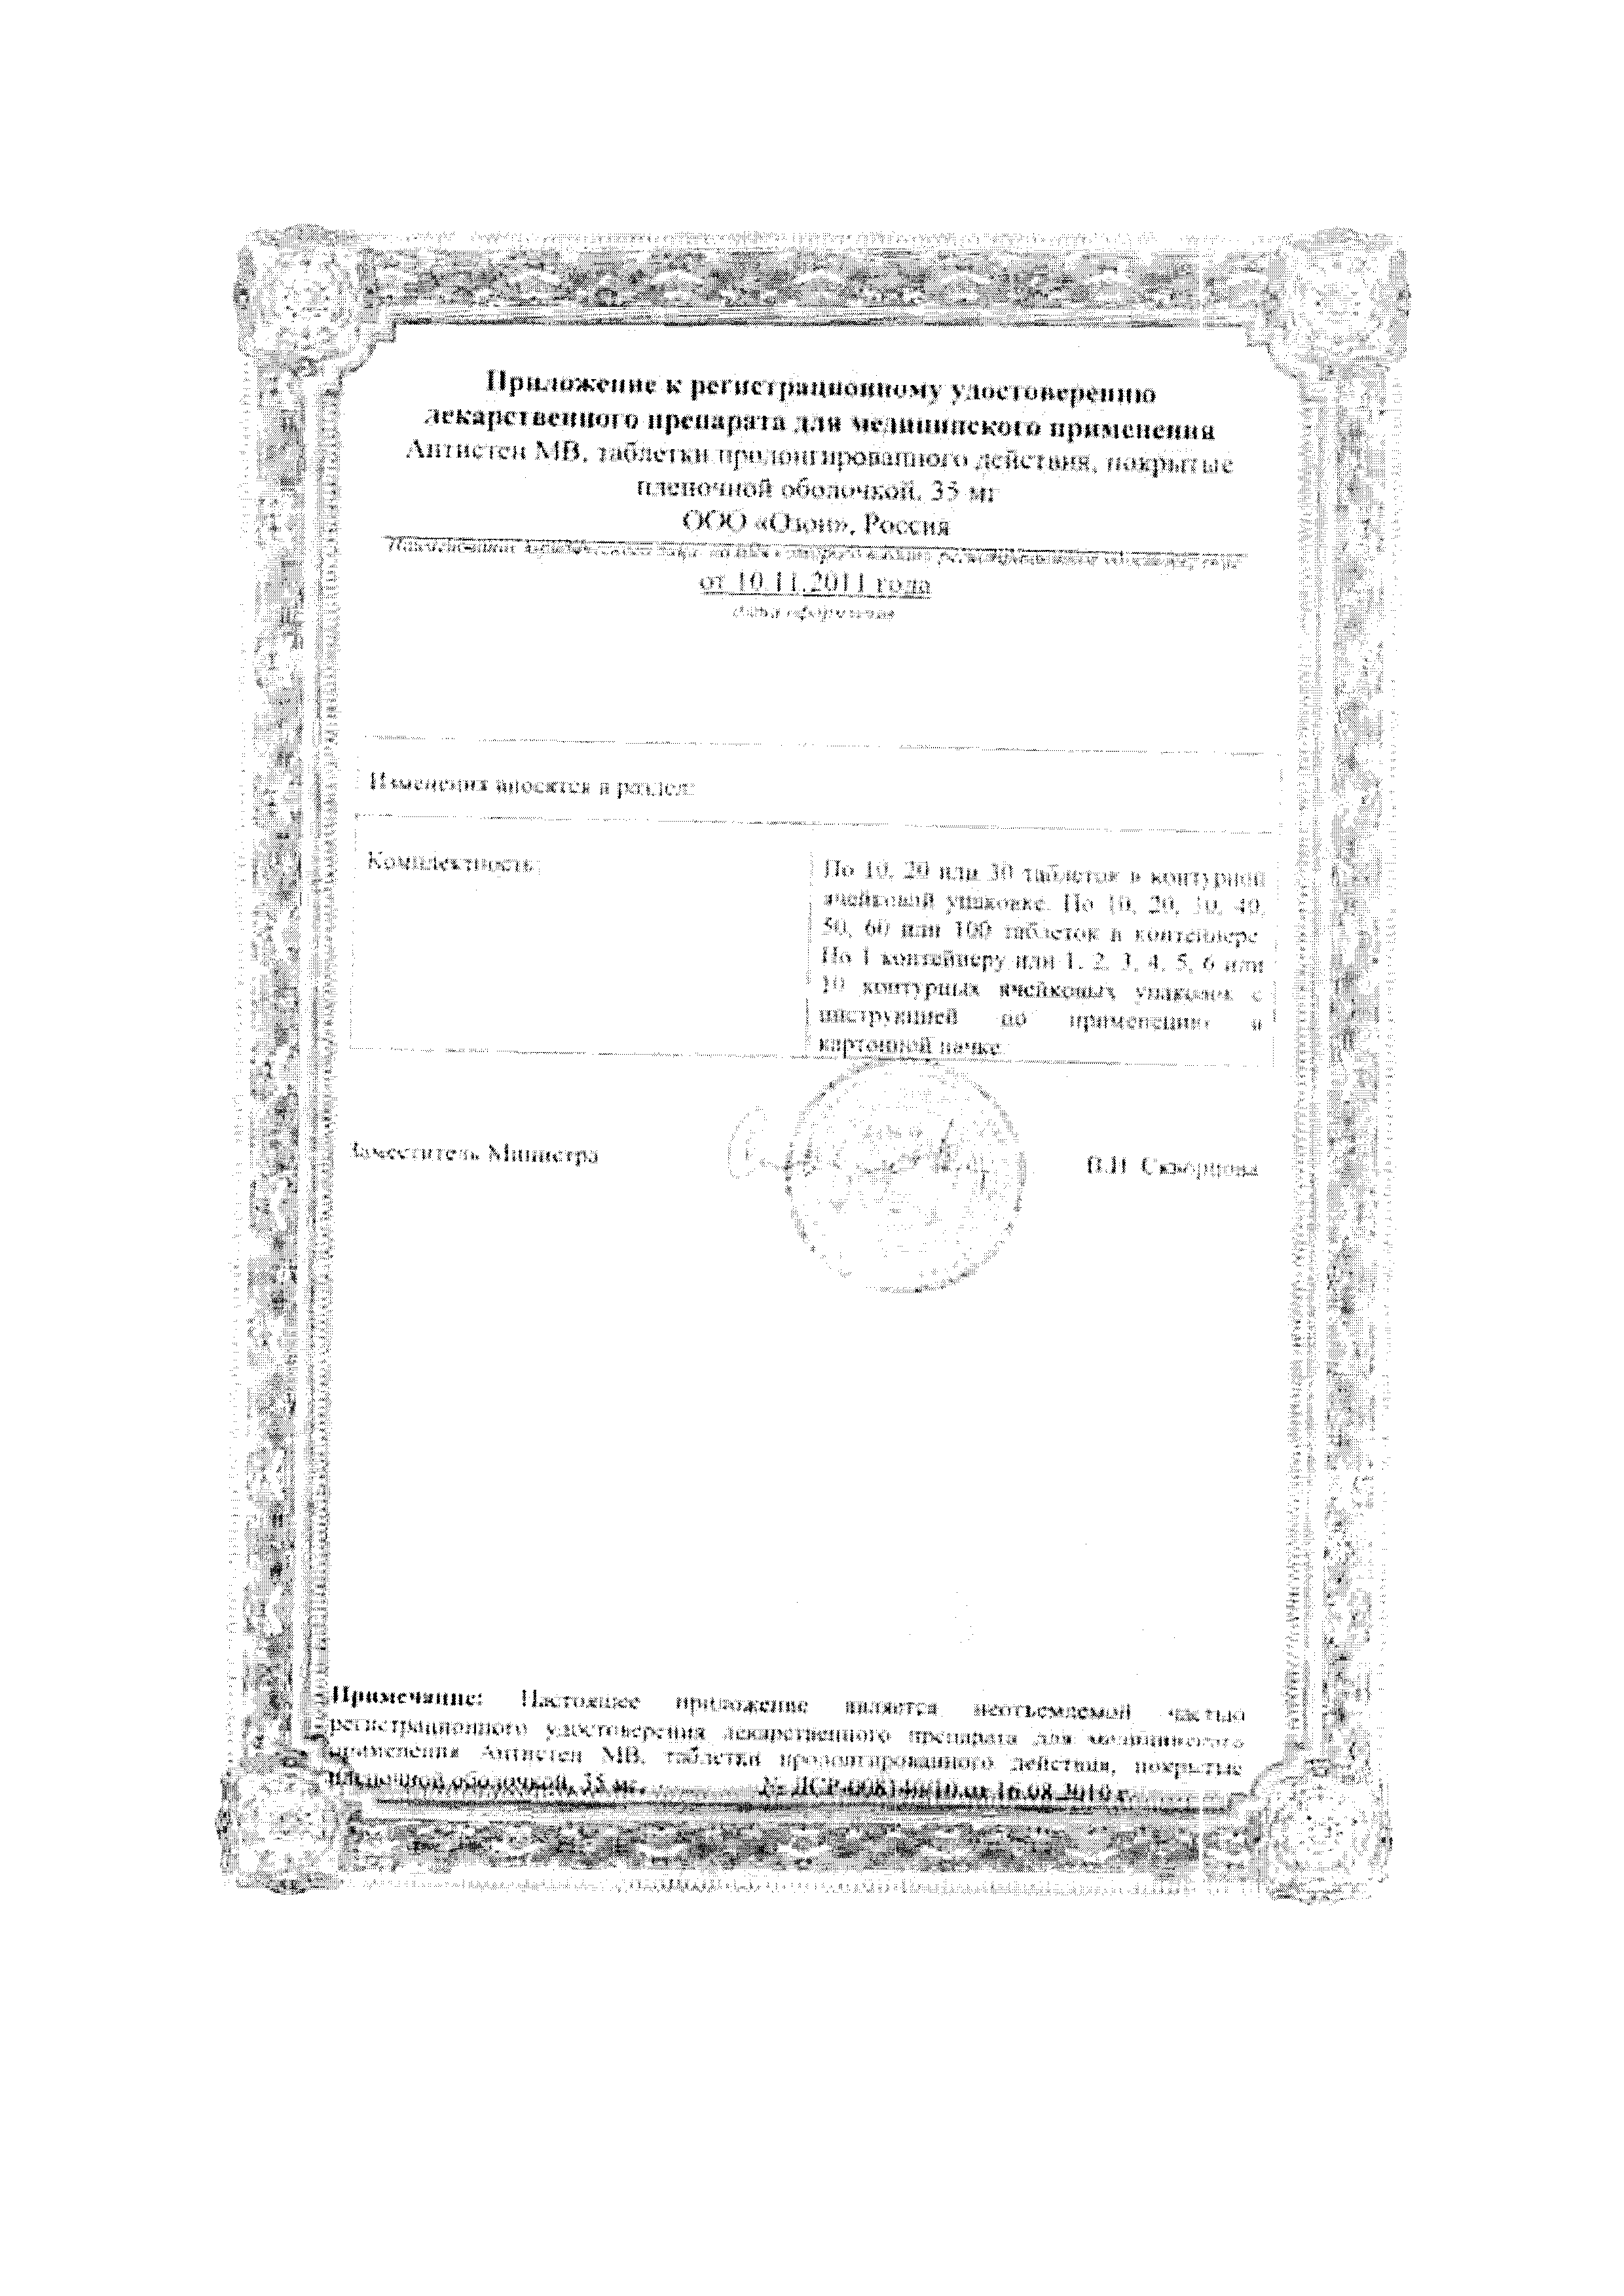 Антистен МВ сертификат